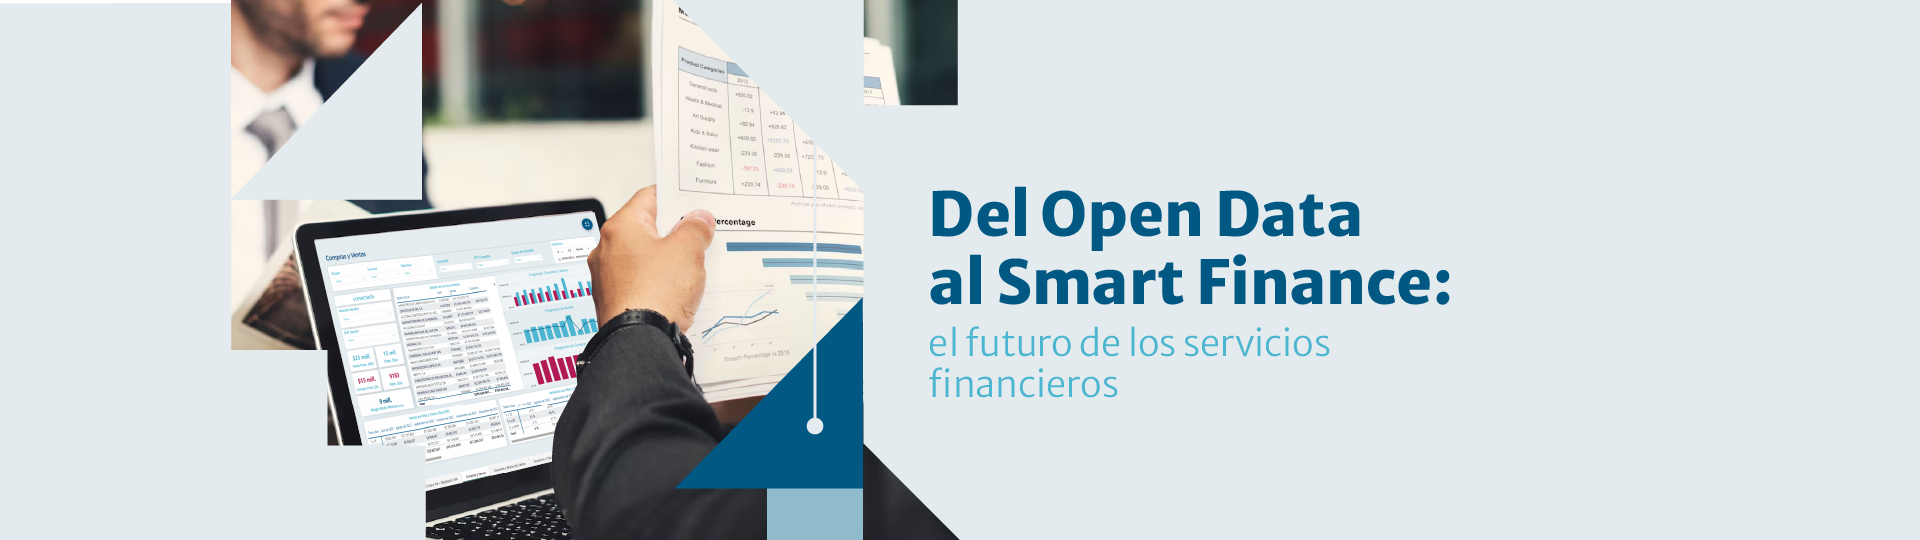 del open data al smart finance Fapro